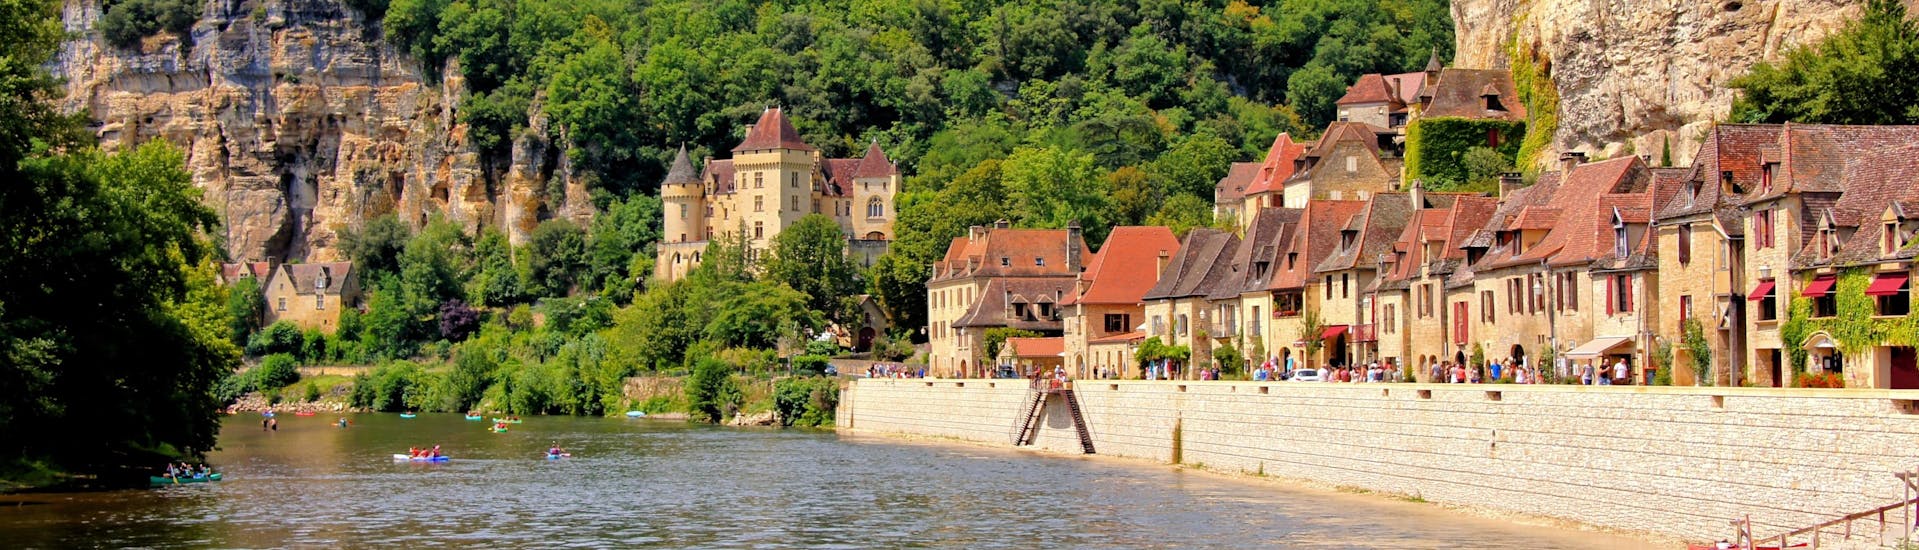 Belle vue du village de La Roque-Gageac sur la rivière Dordogne sur laquelle les touristes font du canoë pendant l'été.